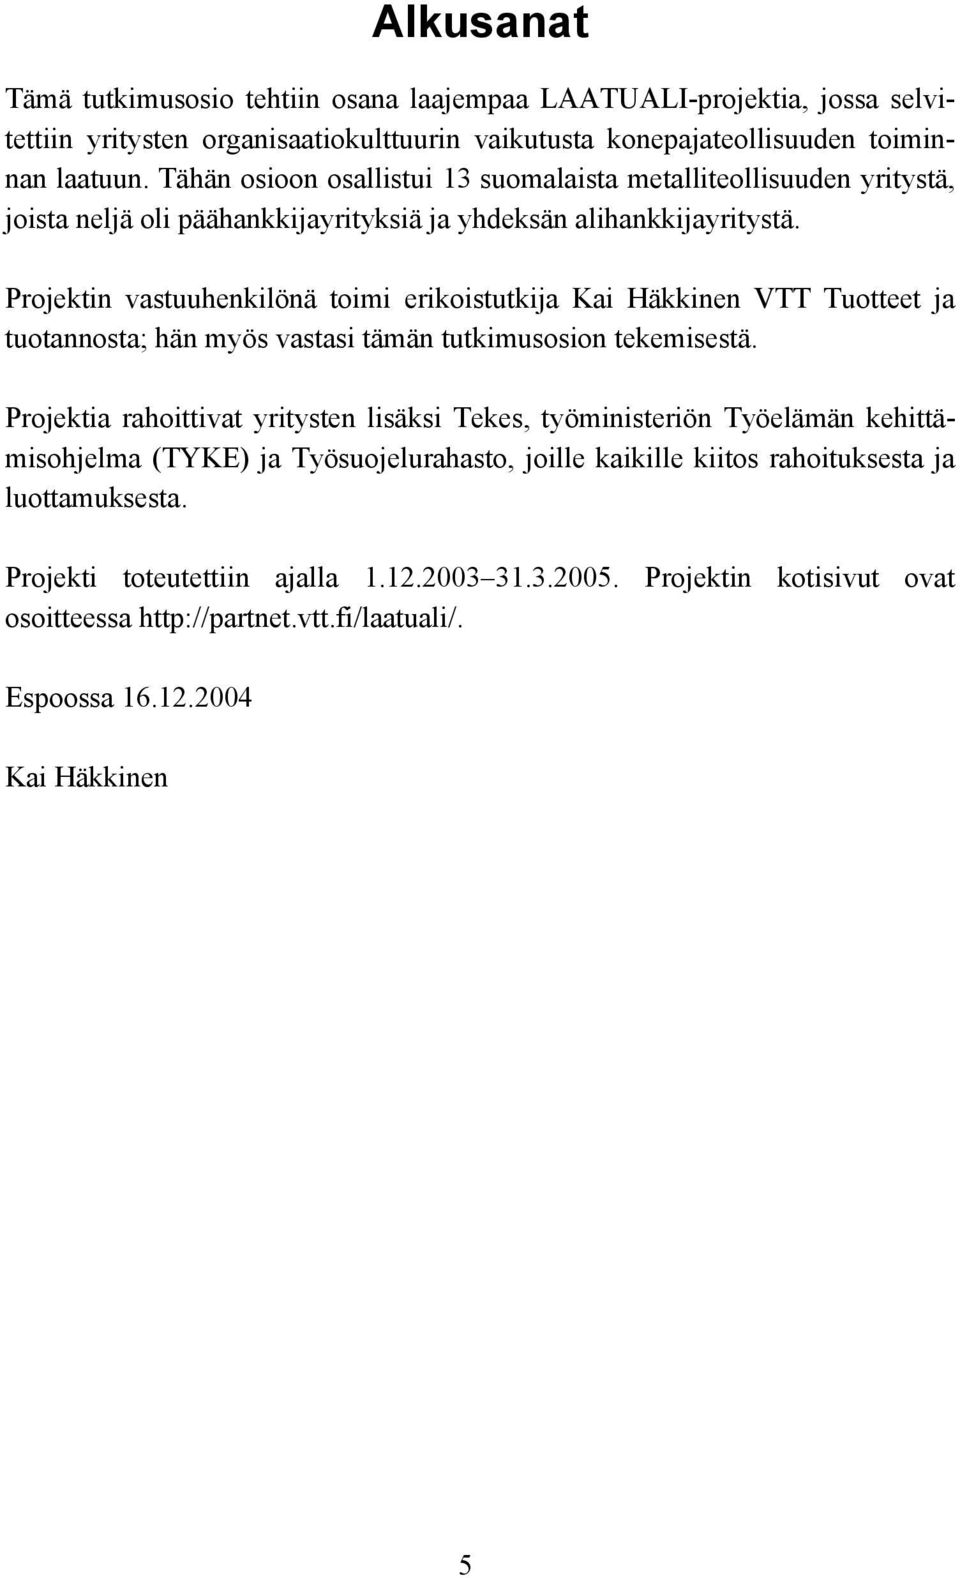 Projektin vastuuhenkilönä toimi erikoistutkija Kai Häkkinen VTT Tuotteet ja tuotannosta; hän myös vastasi tämän tutkimusosion tekemisestä.